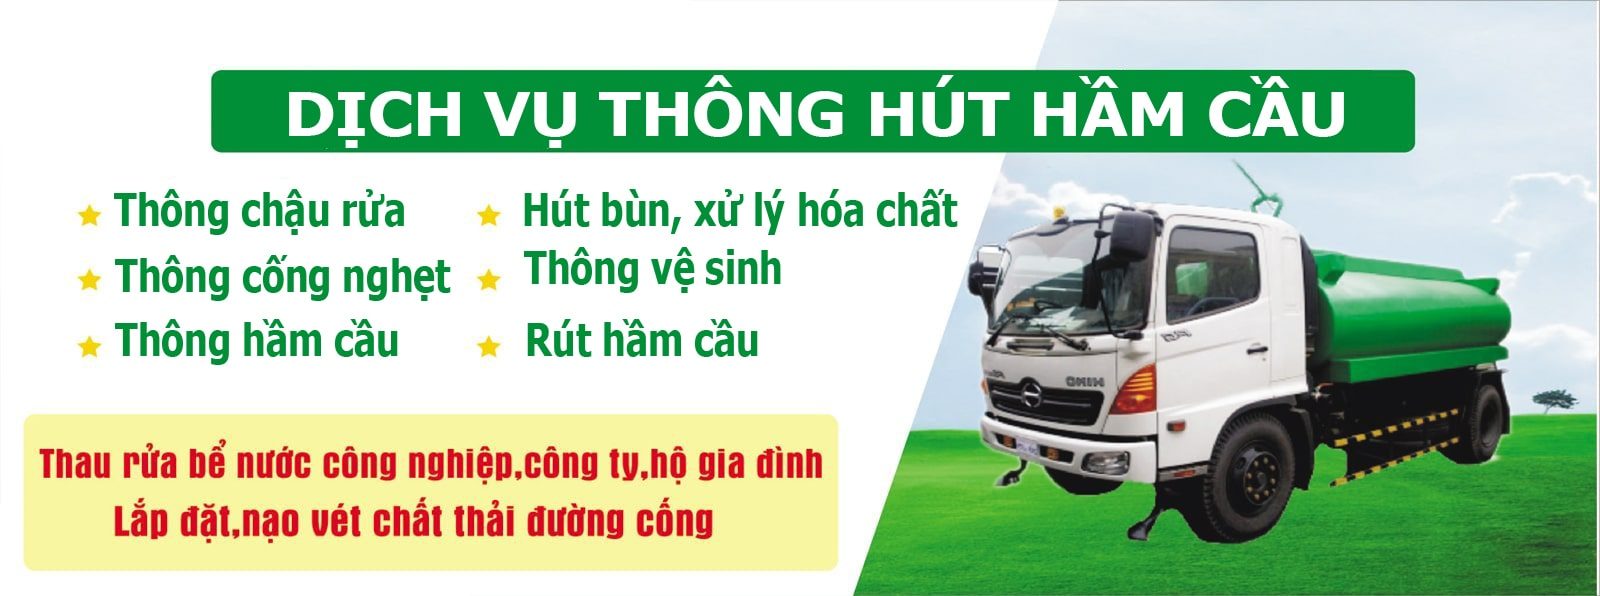 Dịch vụ hút hầm cầu giá rẻ tại Tiên Phước Quảng Nam